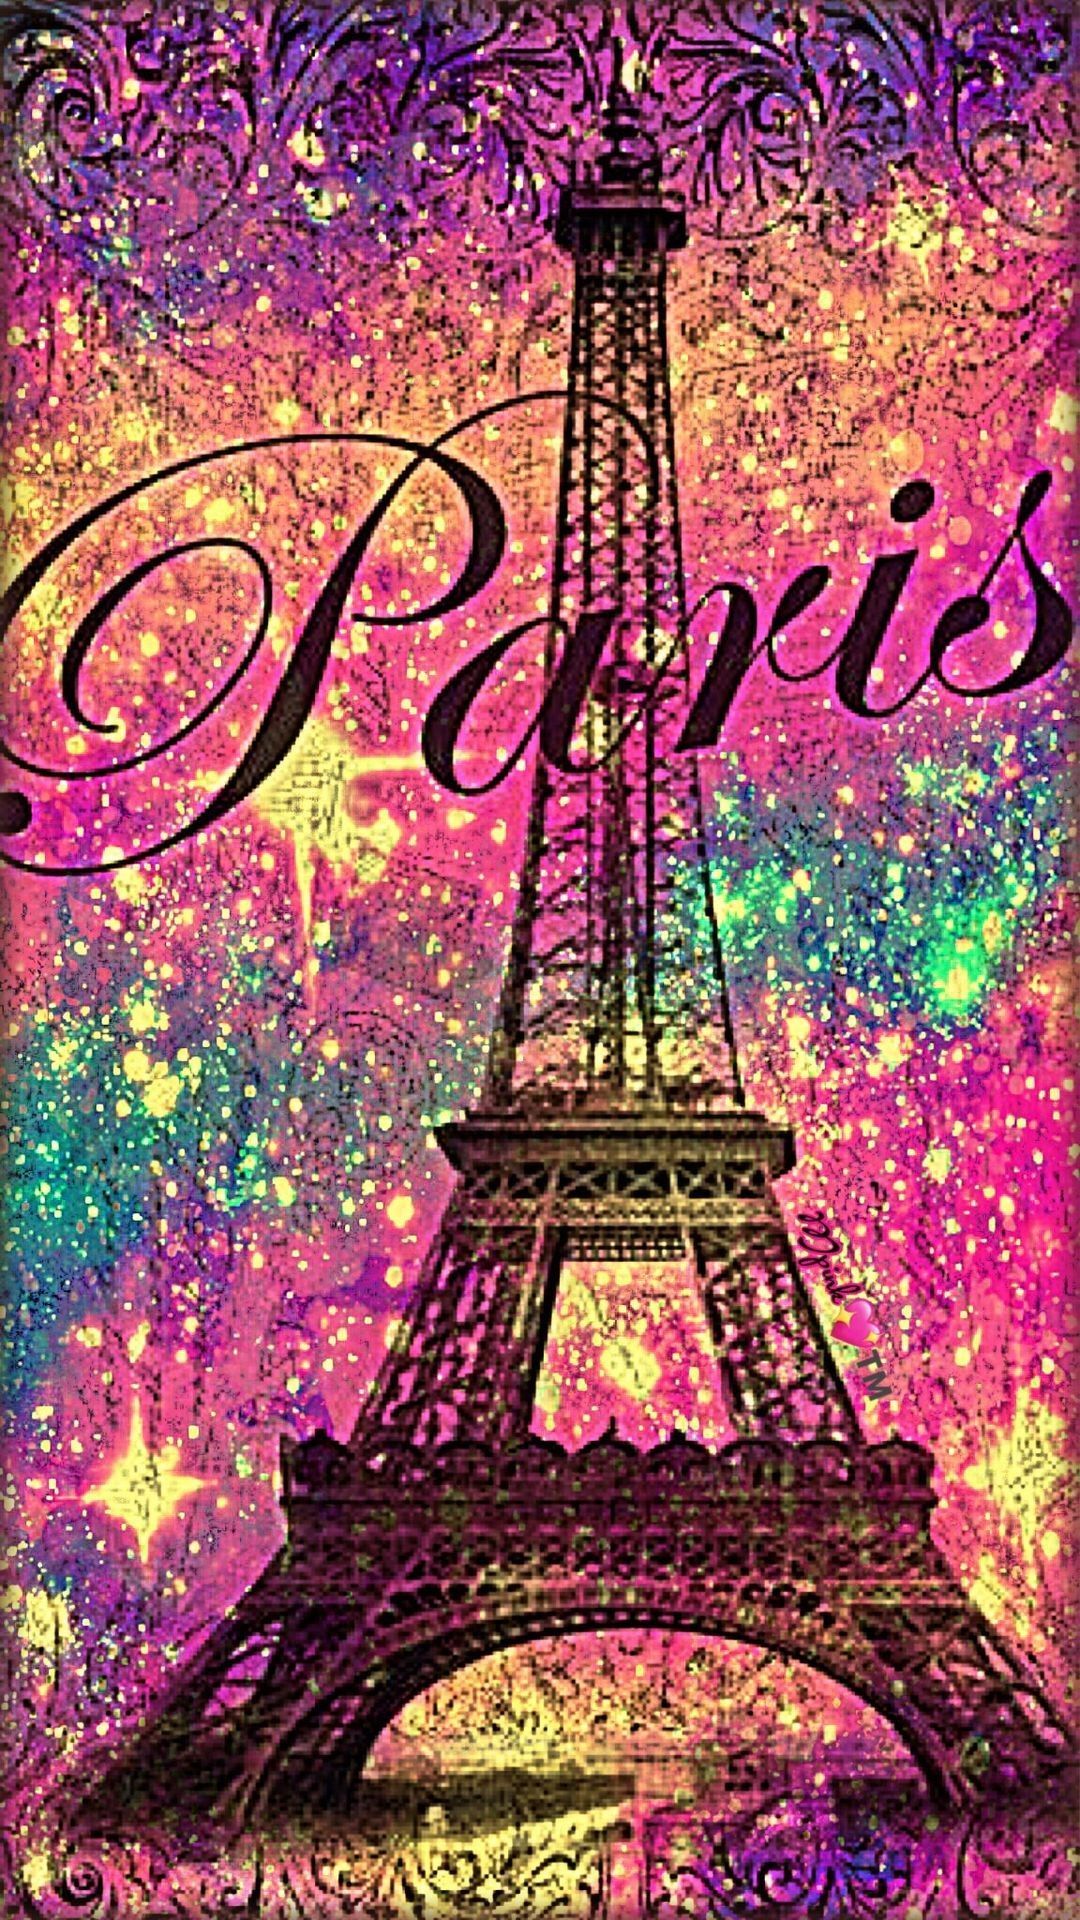 44 Best Paris wallpaper iphone ideas  paris wallpaper paris tour eiffel